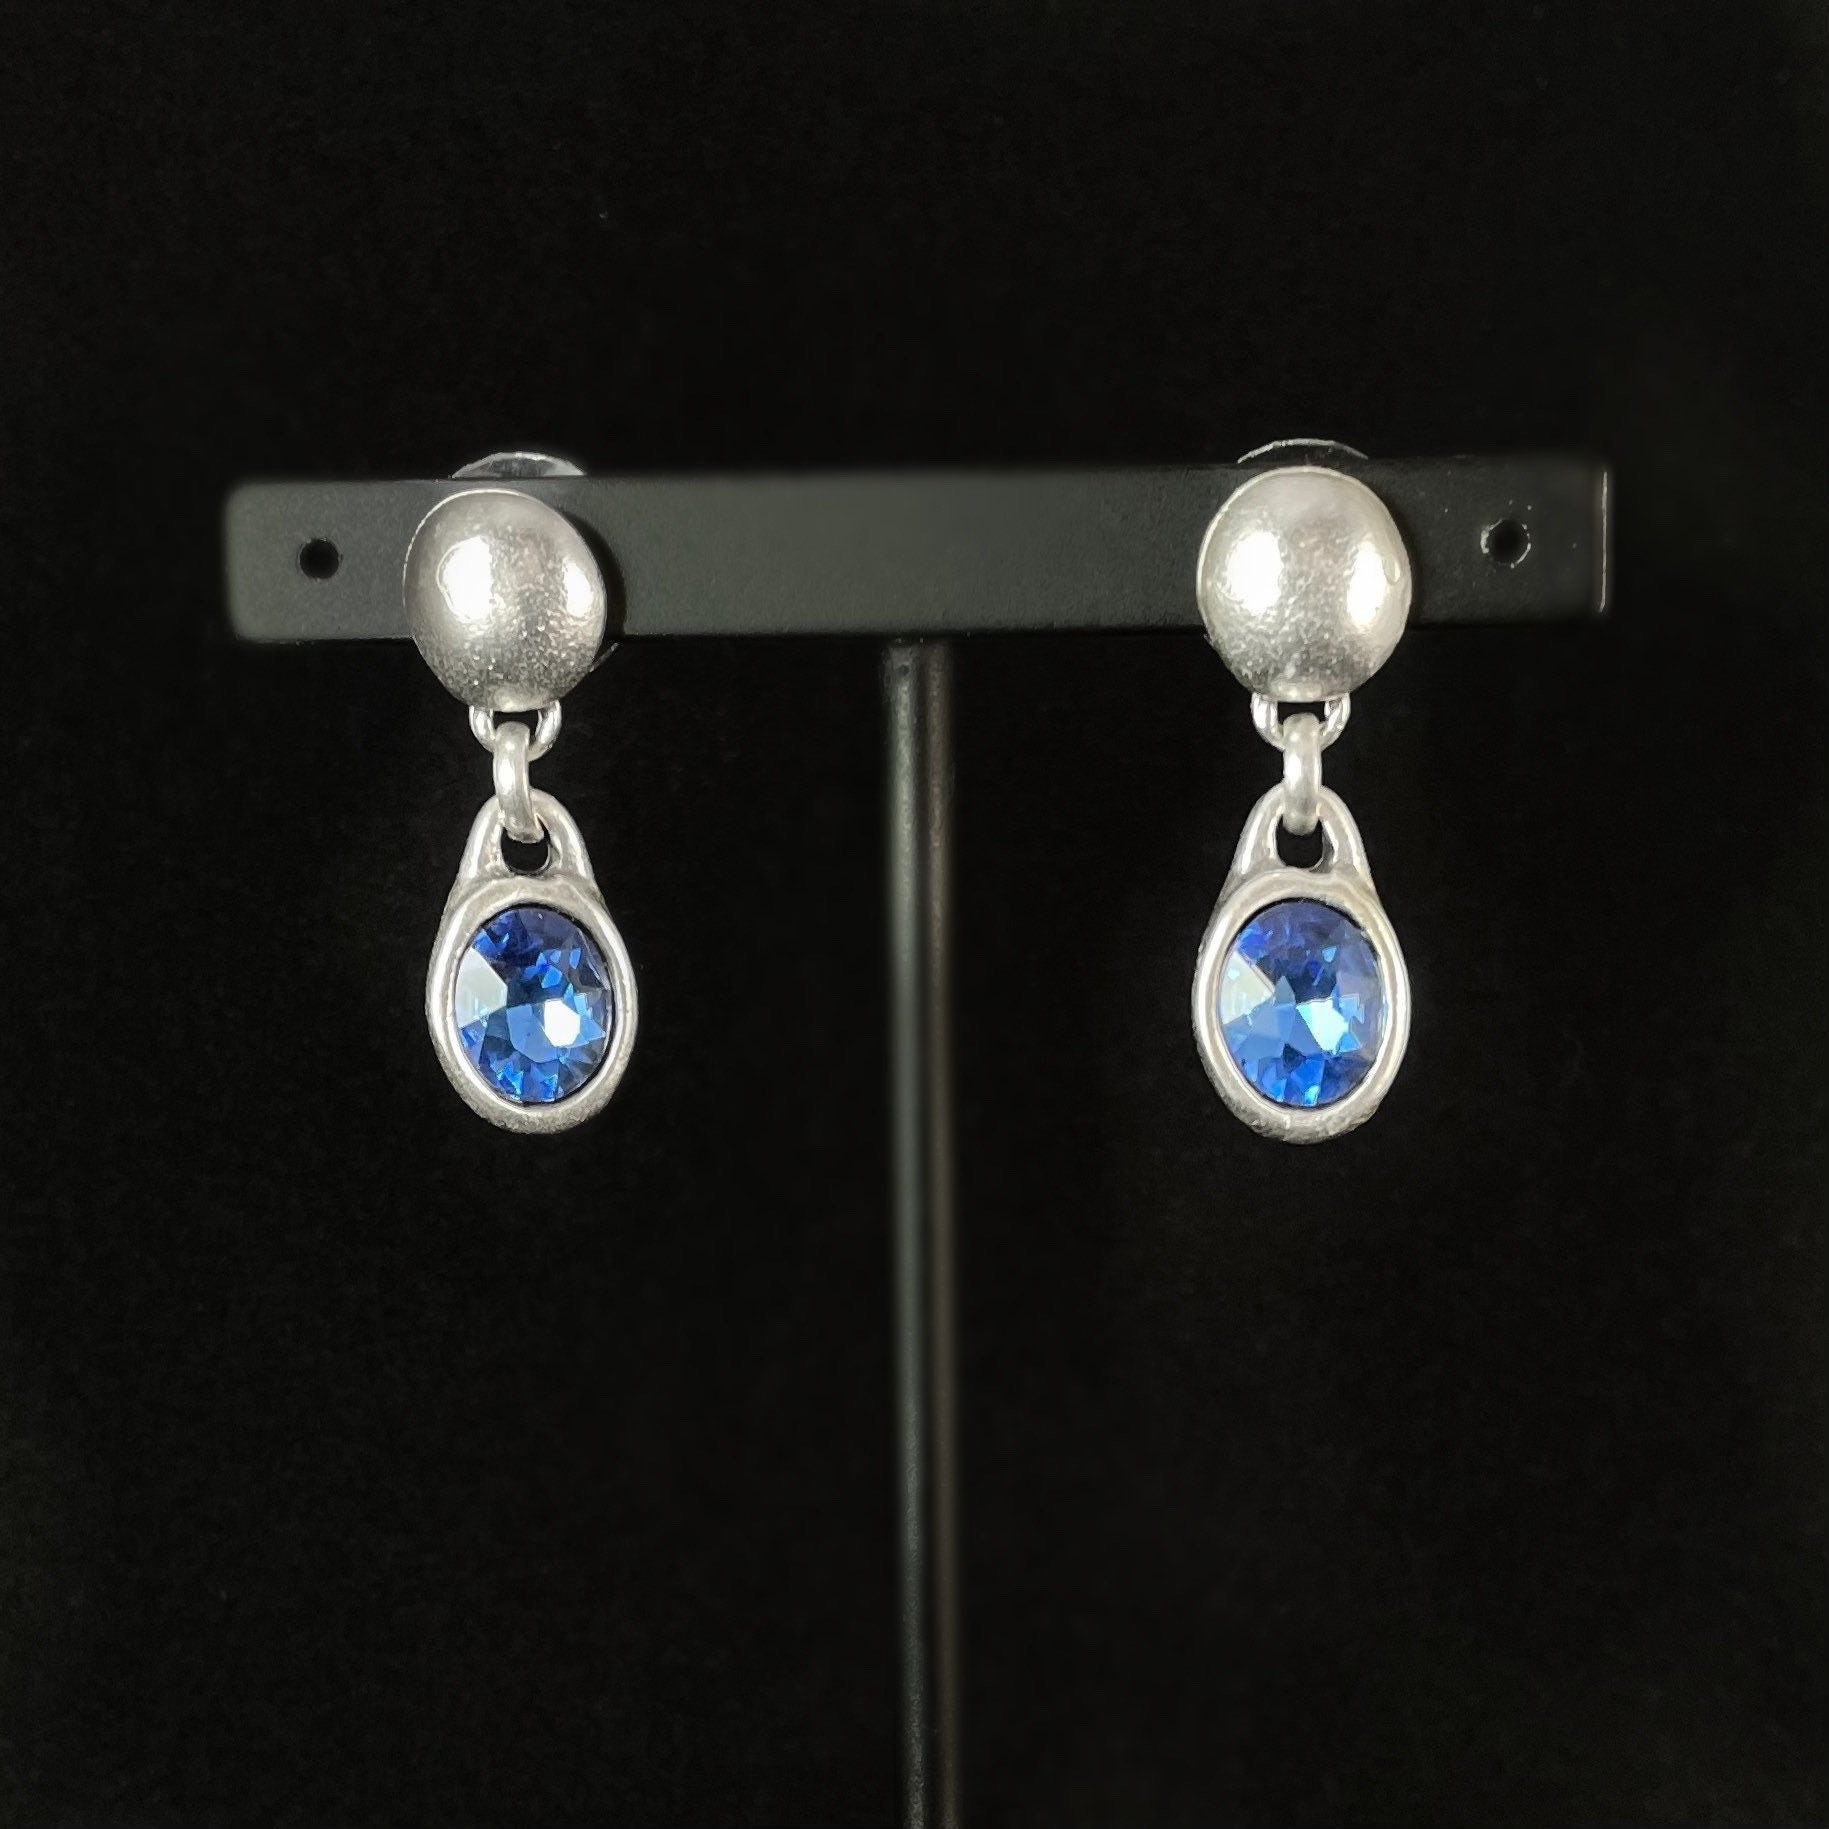 Silver Drop Earrings with Blue Crystal, Handmade, Nickel Free